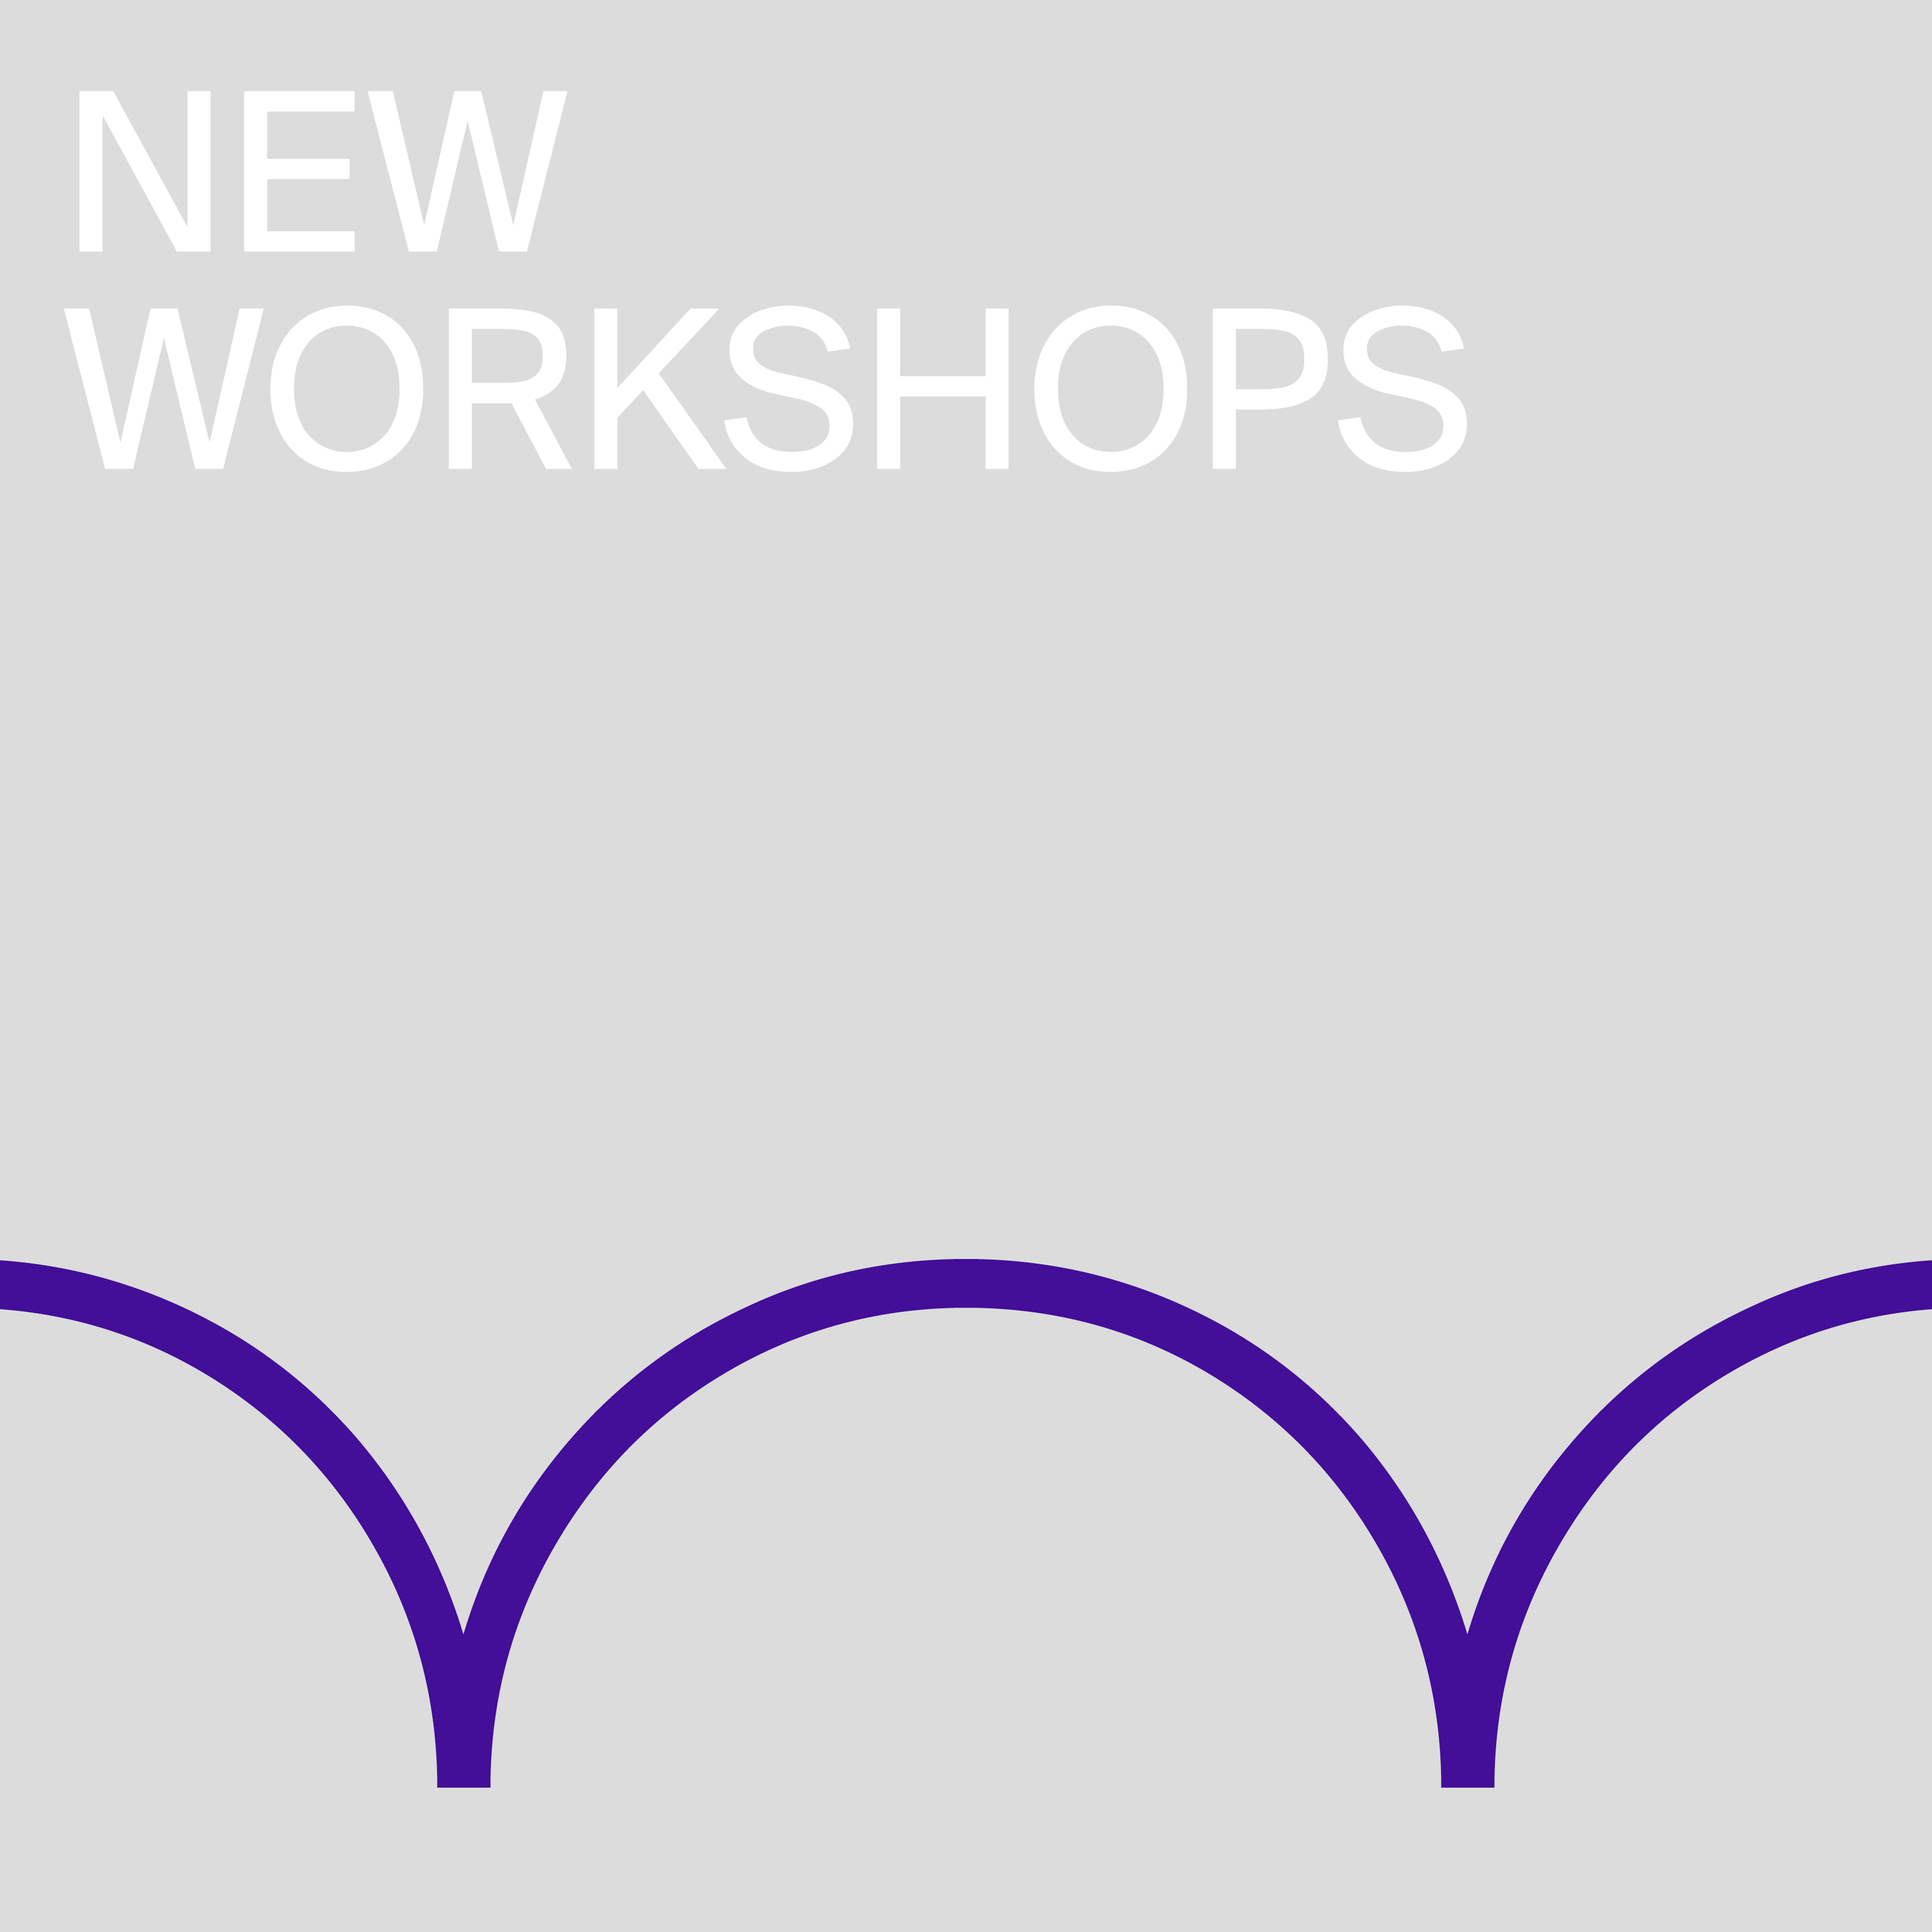 New workshops banner